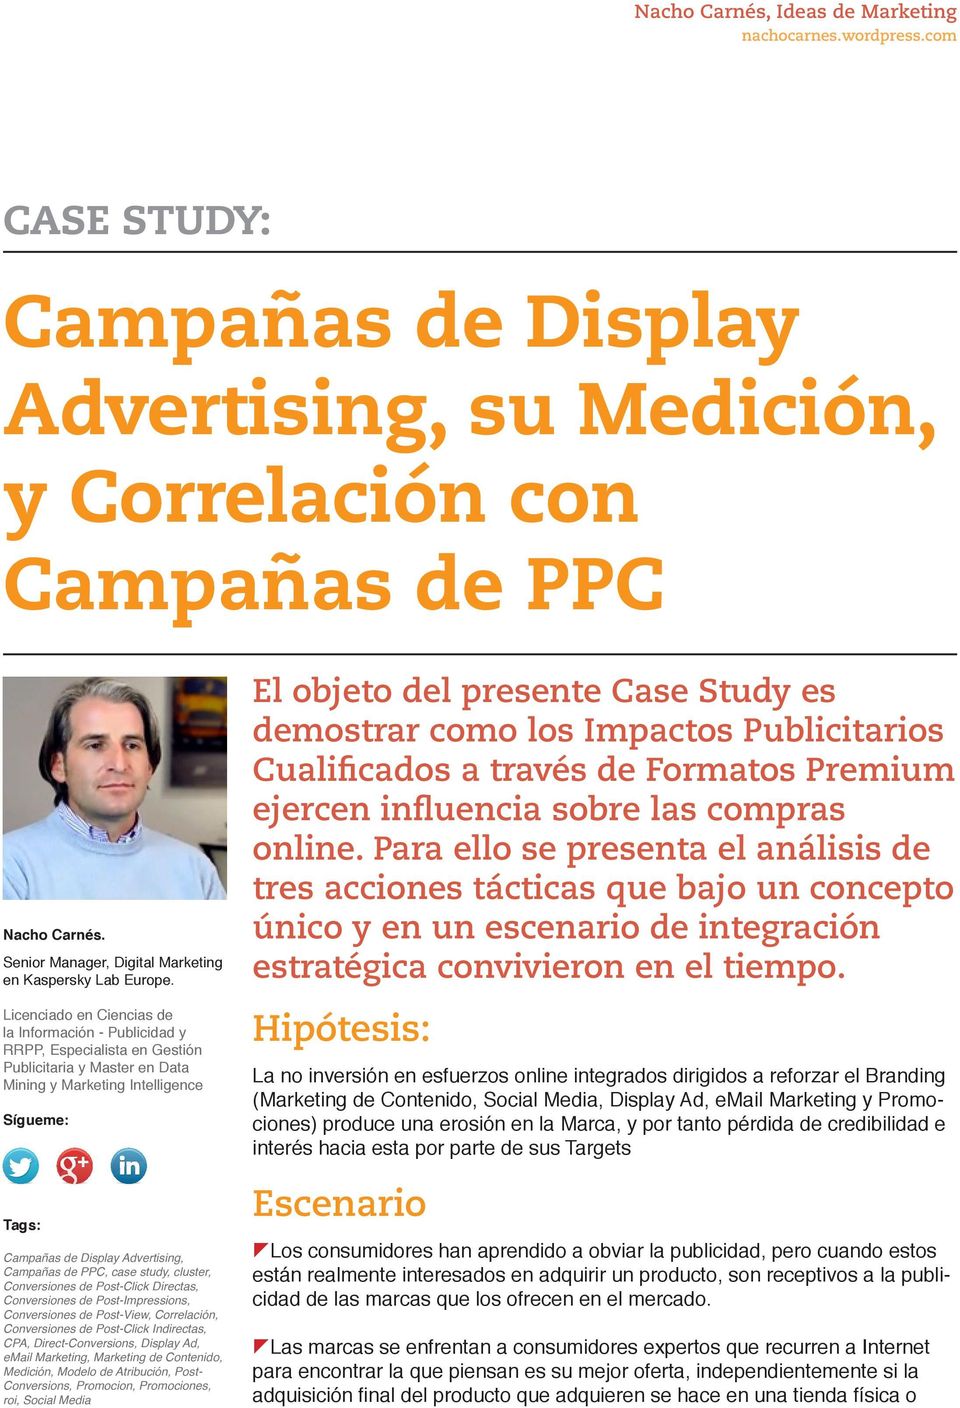 Campañas de PPC, case study, cluster, Conversiones de Post-Click, Conversiones de Post-Impressions, Conversiones de Post-View, Correlación, Conversiones de Post-Click, CPA, Direct-Conversions,